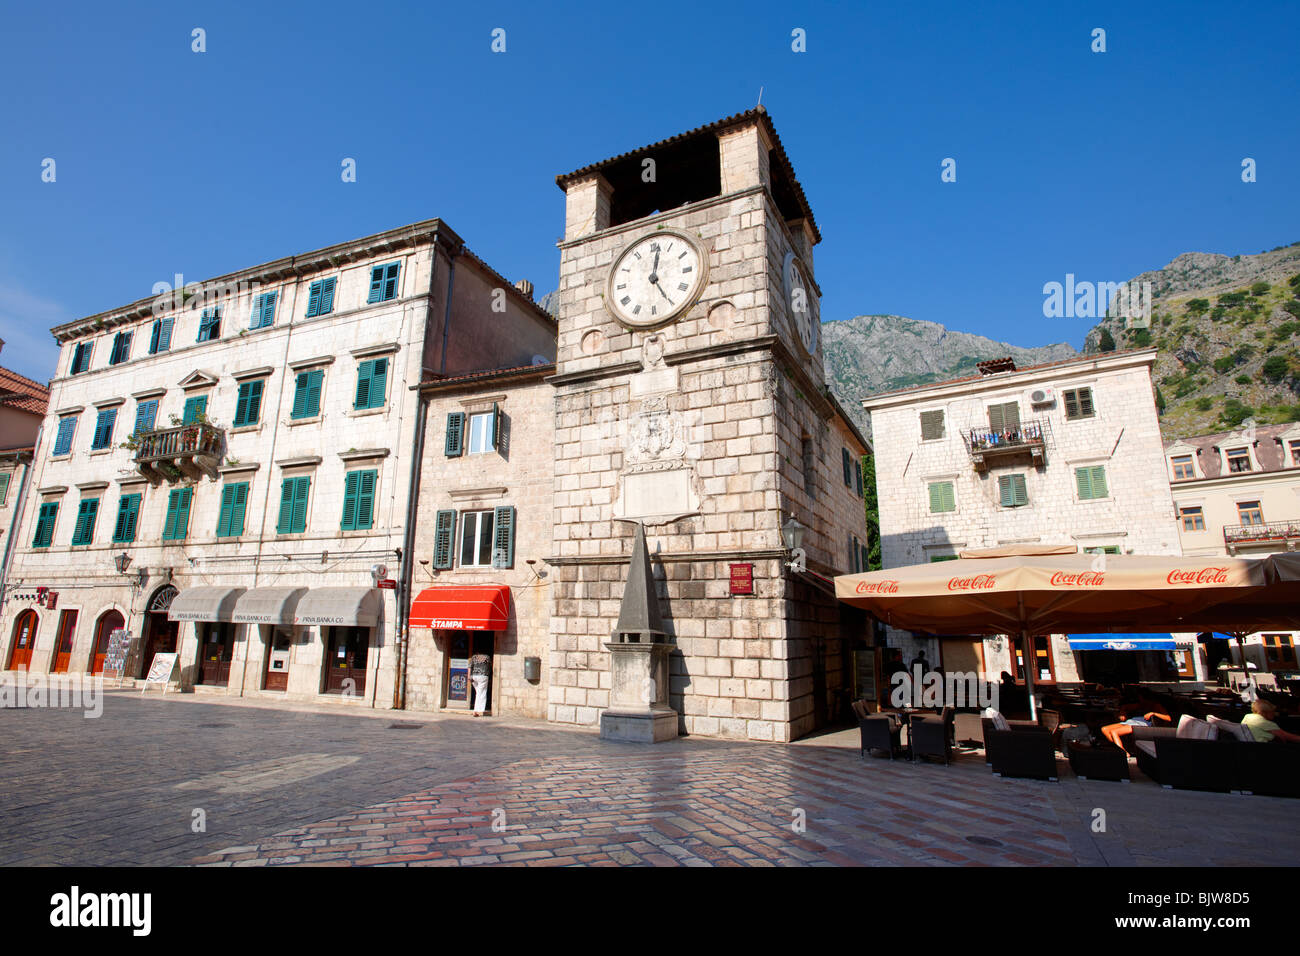 Plazas de armas, la plaza principal de la ciudad con la torre del reloj erigida en 1602. Kotor, Montenegro. Foto de stock